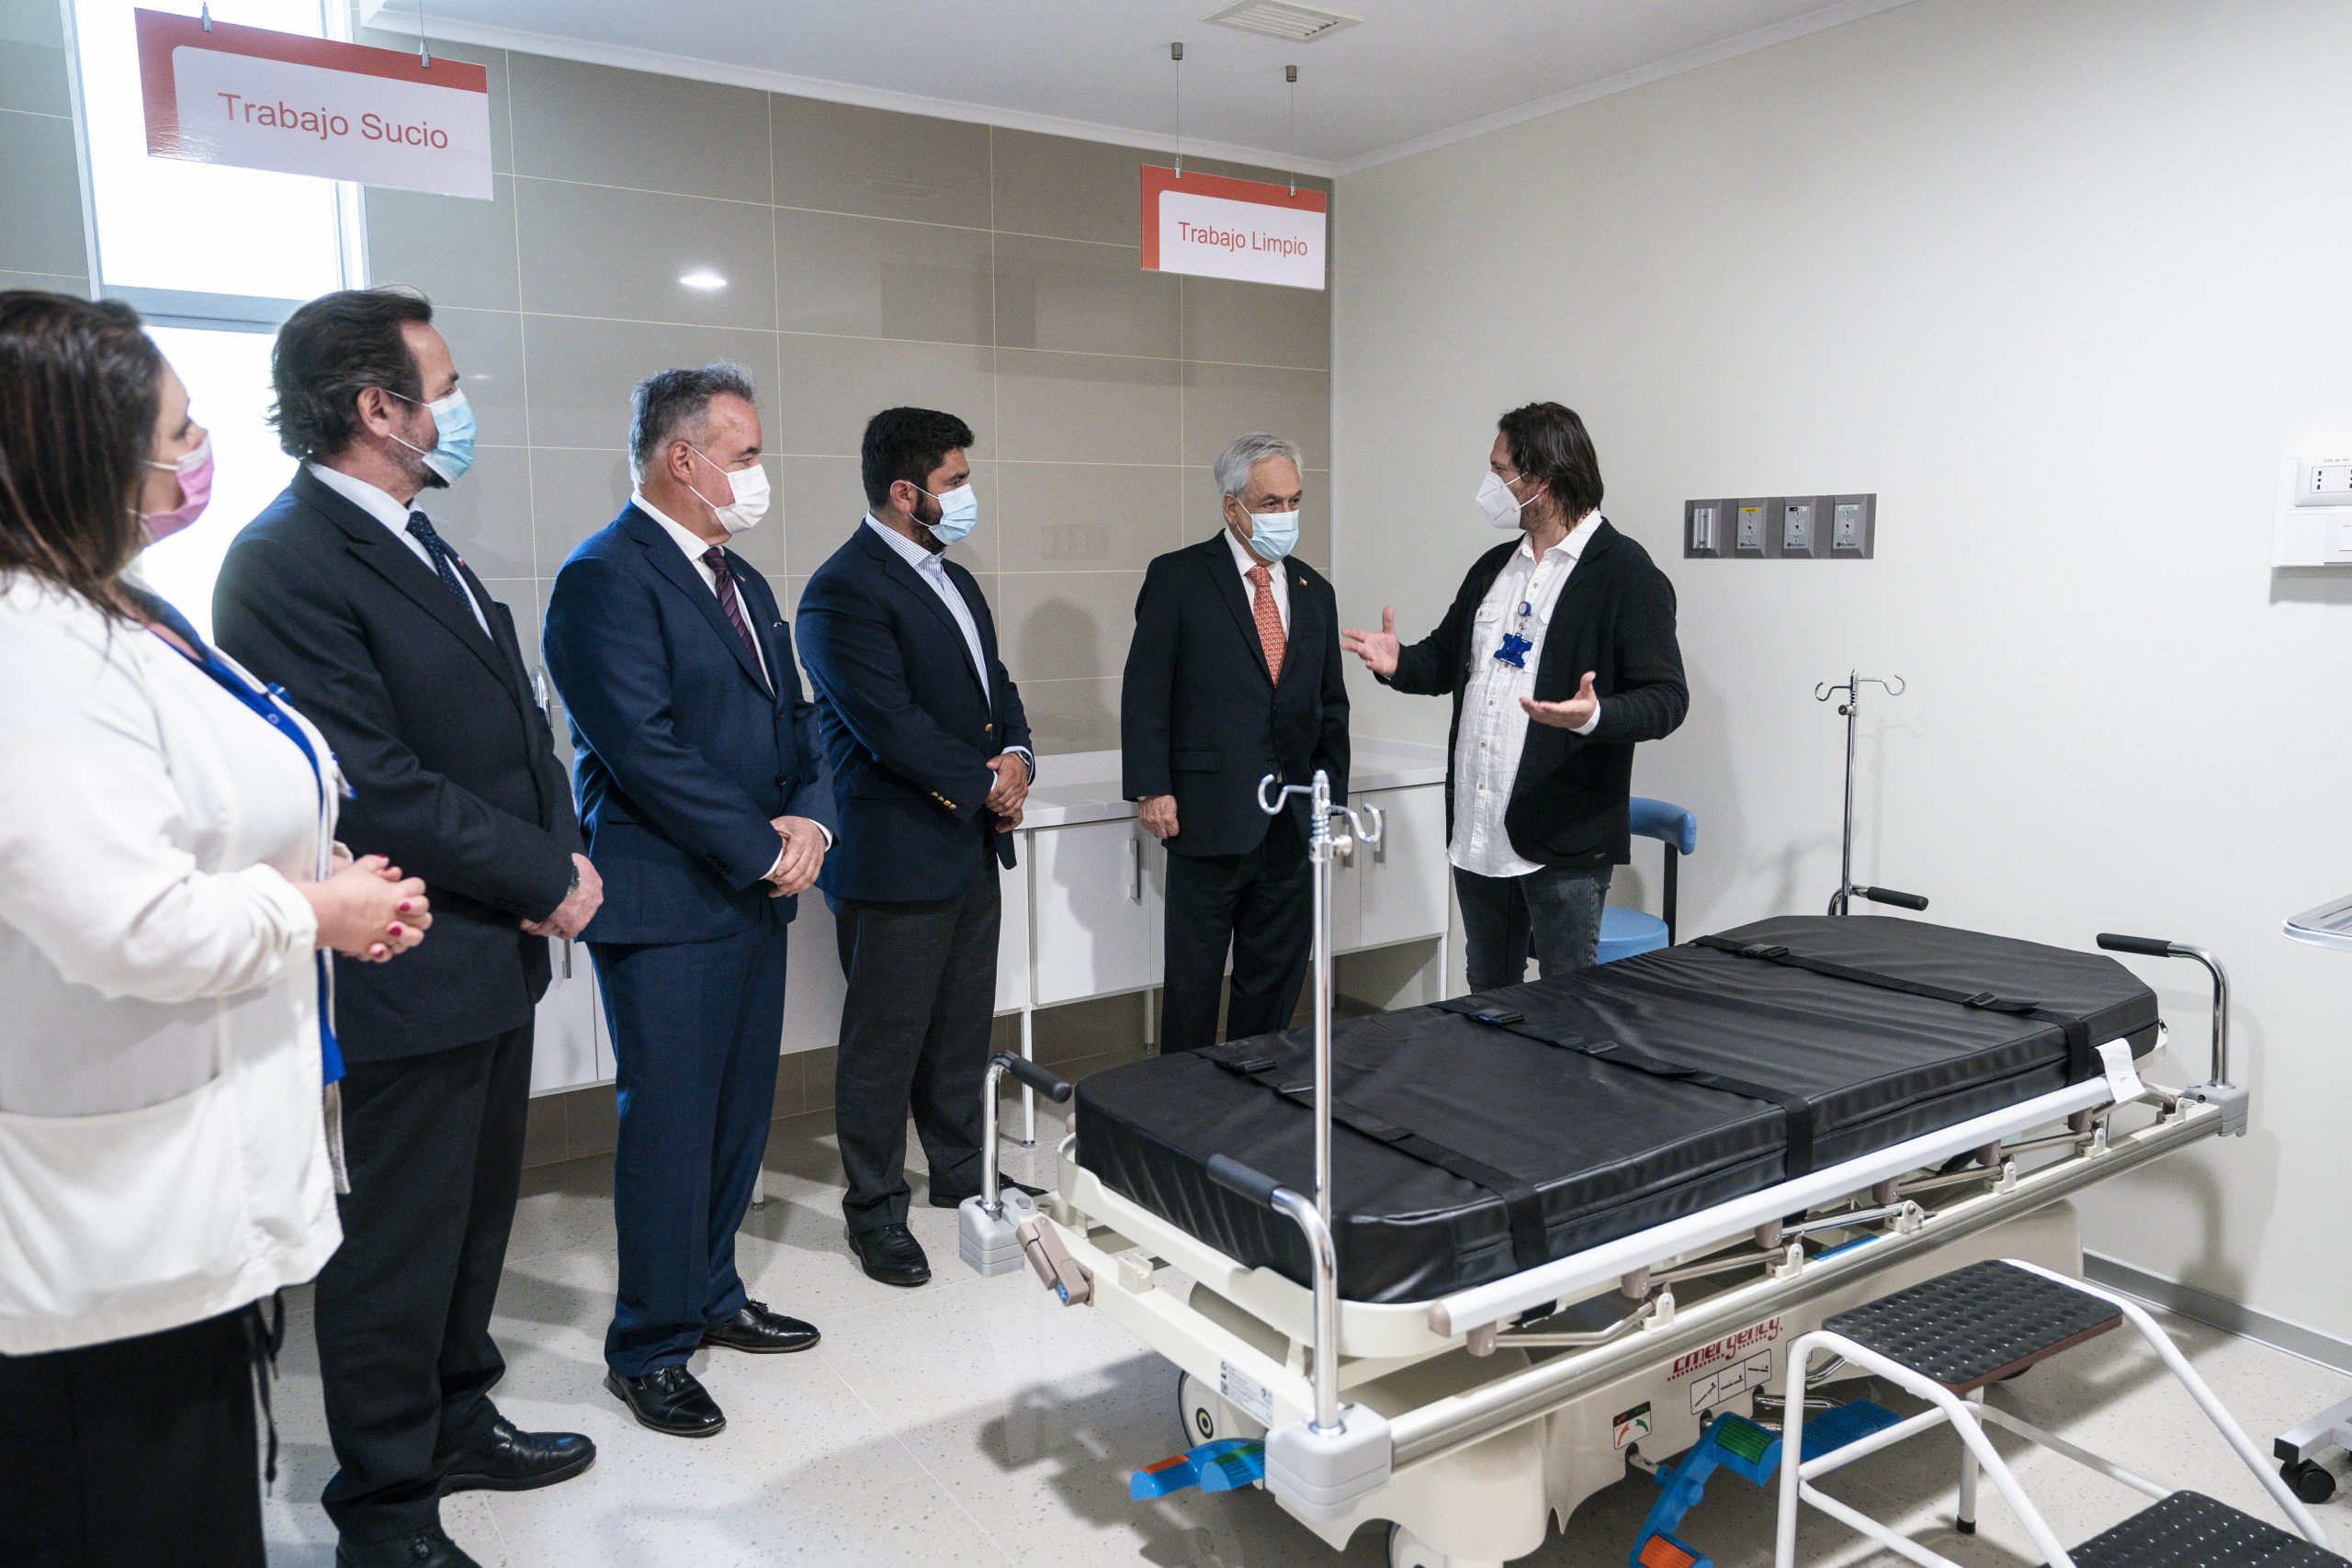 Presidente Piñera y subsecretario Dougnac develan placa y realiza visita inspectiva a Hospital de Las Higueras, en Biobío: «Vamos a dar un gran paso adelante en algo tan importante como mejorar la dignidad y la calidad de la salud que reciben los chilenos”